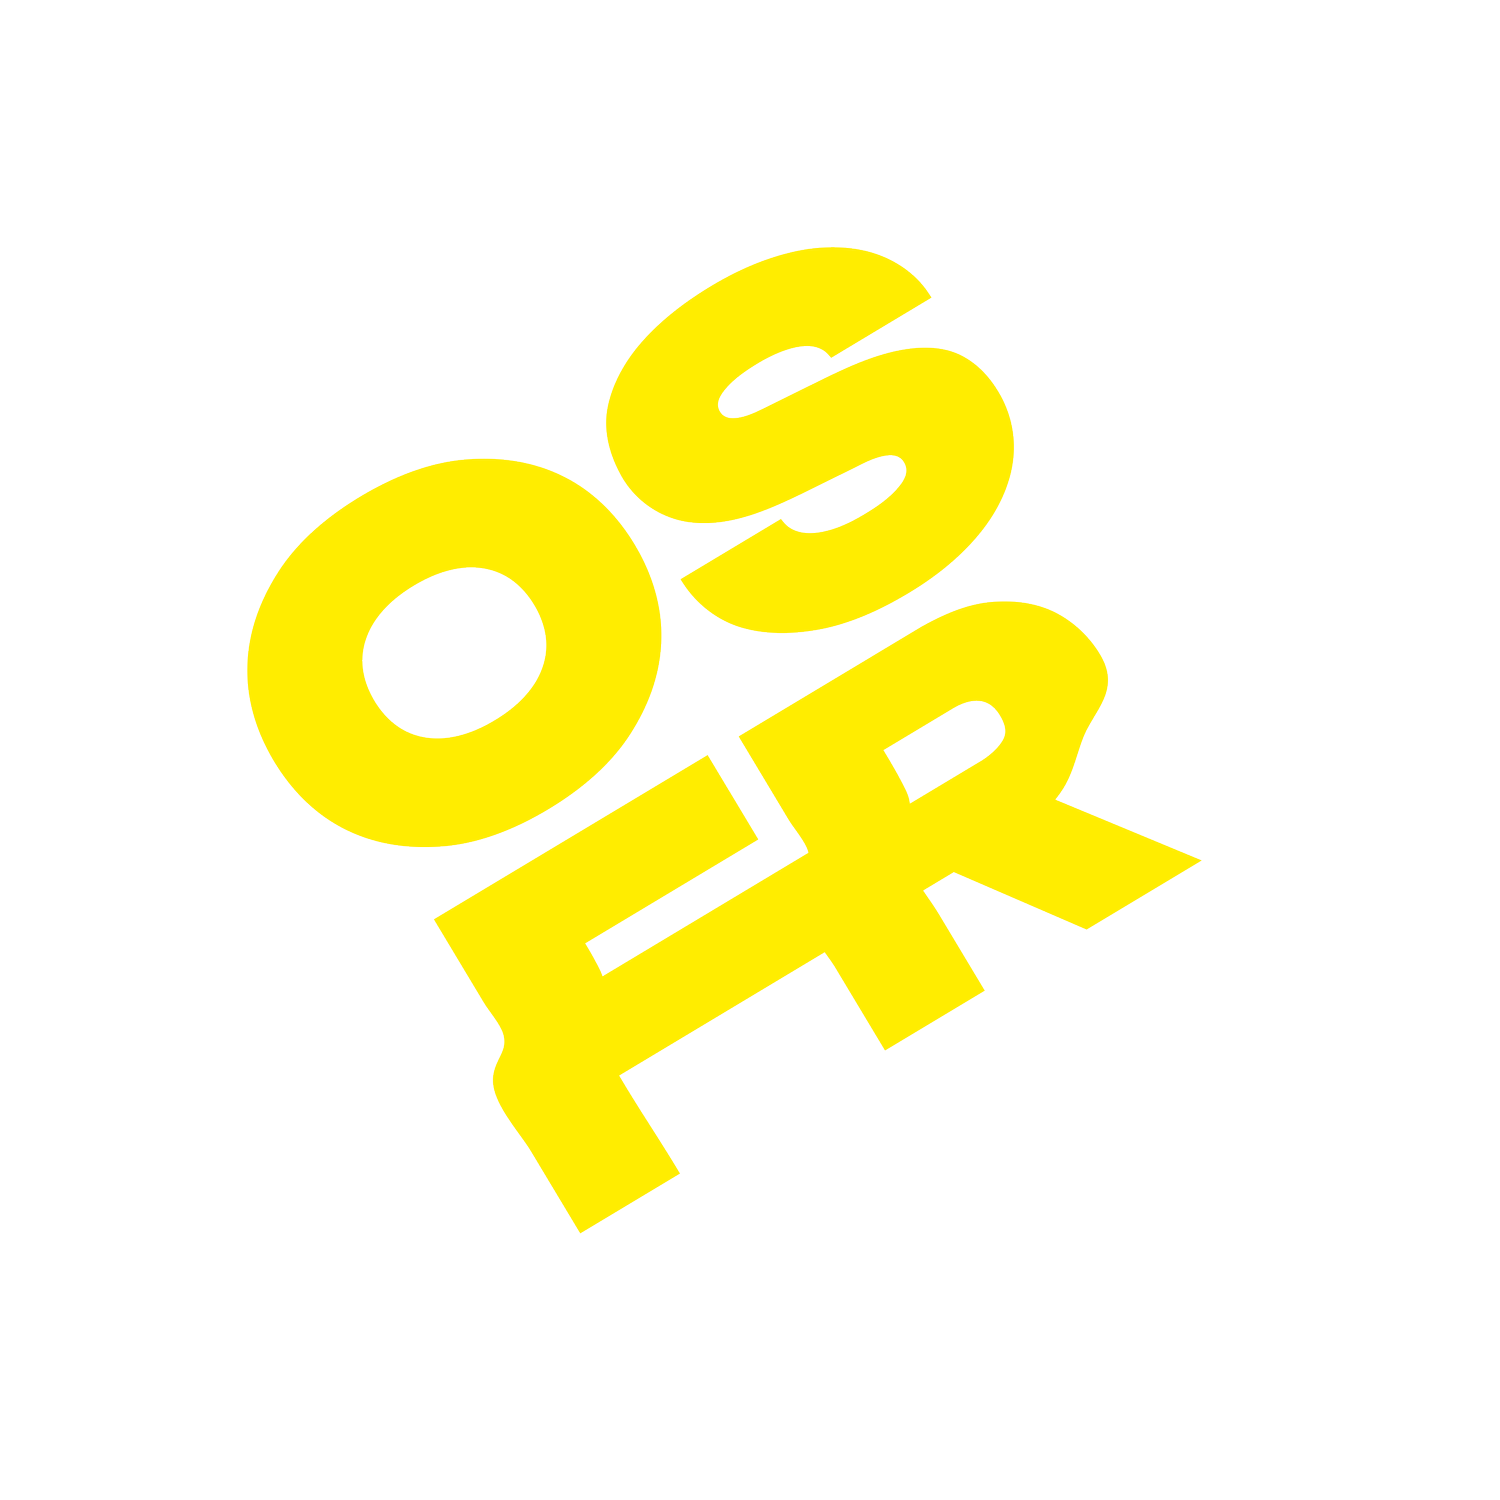 Oslo Fringe